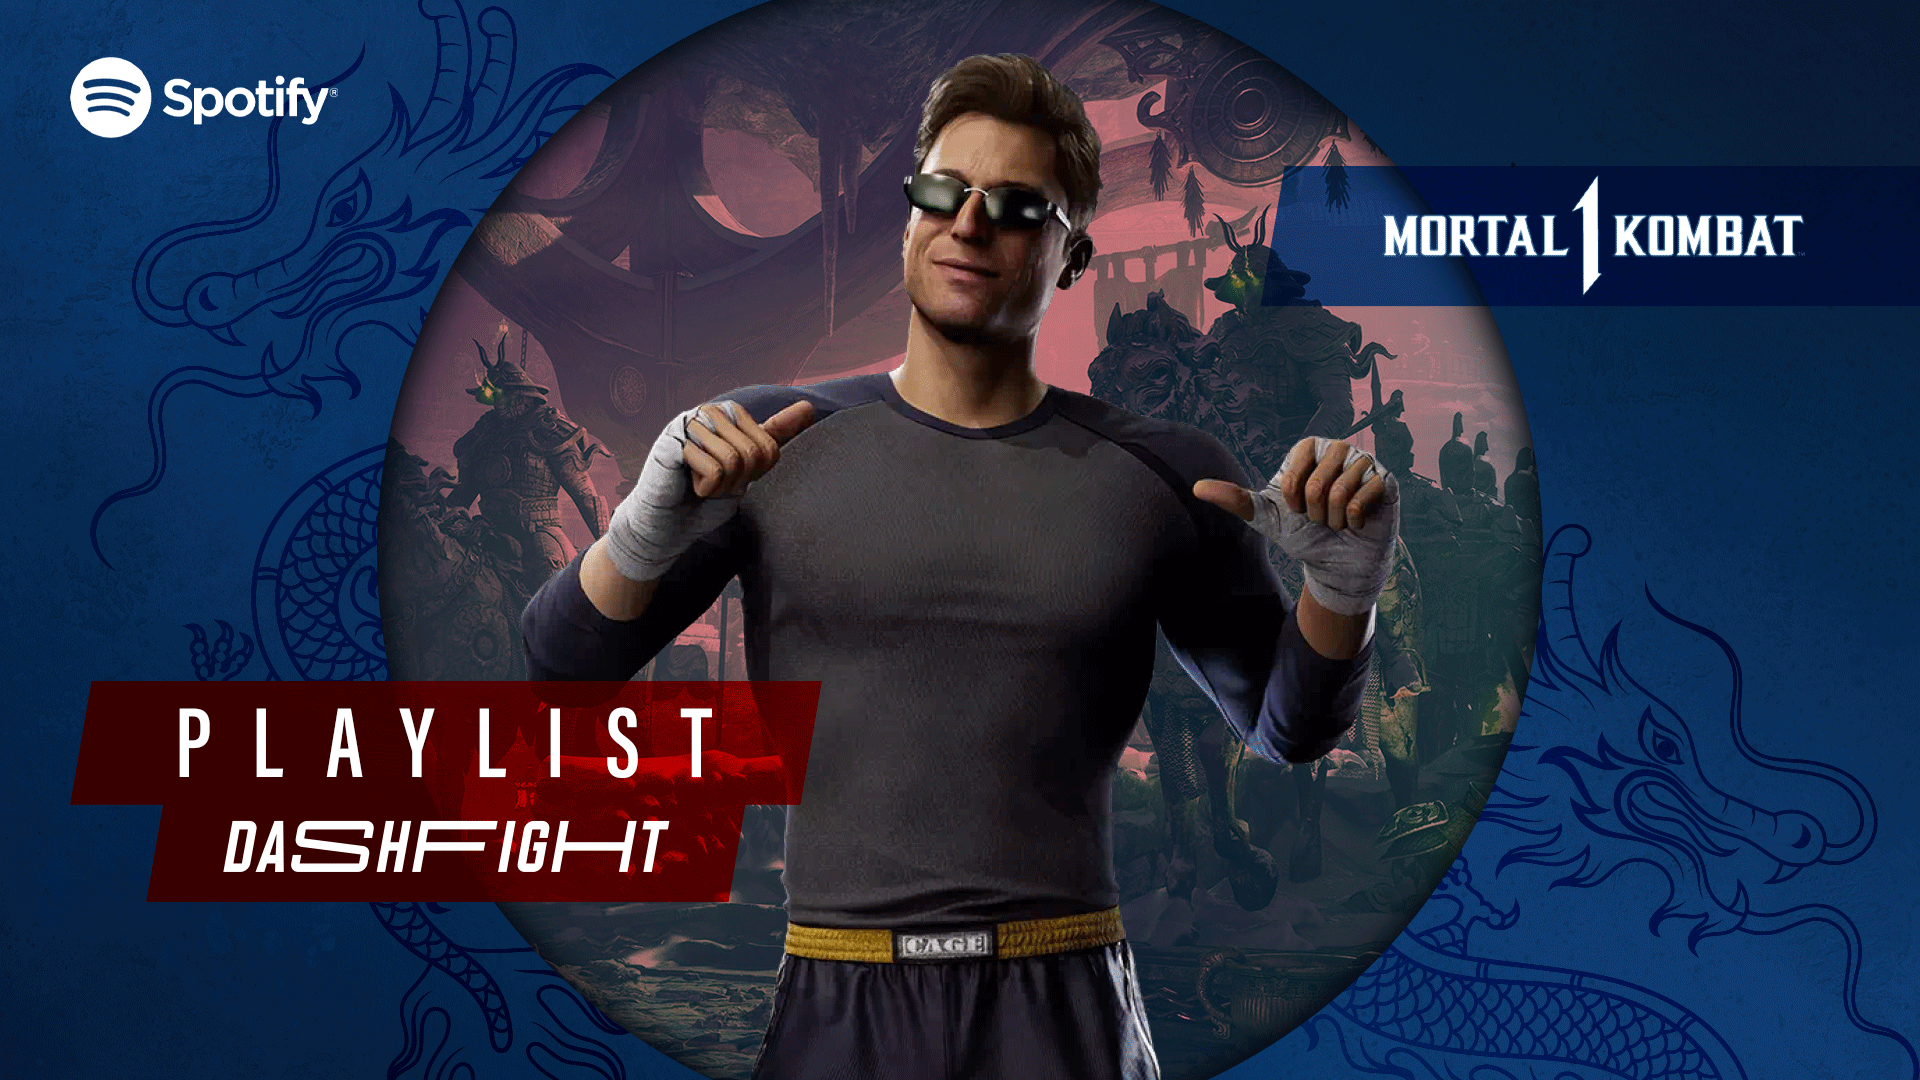 DashFight’s Mortal Kombat 1 Spotify Playlist